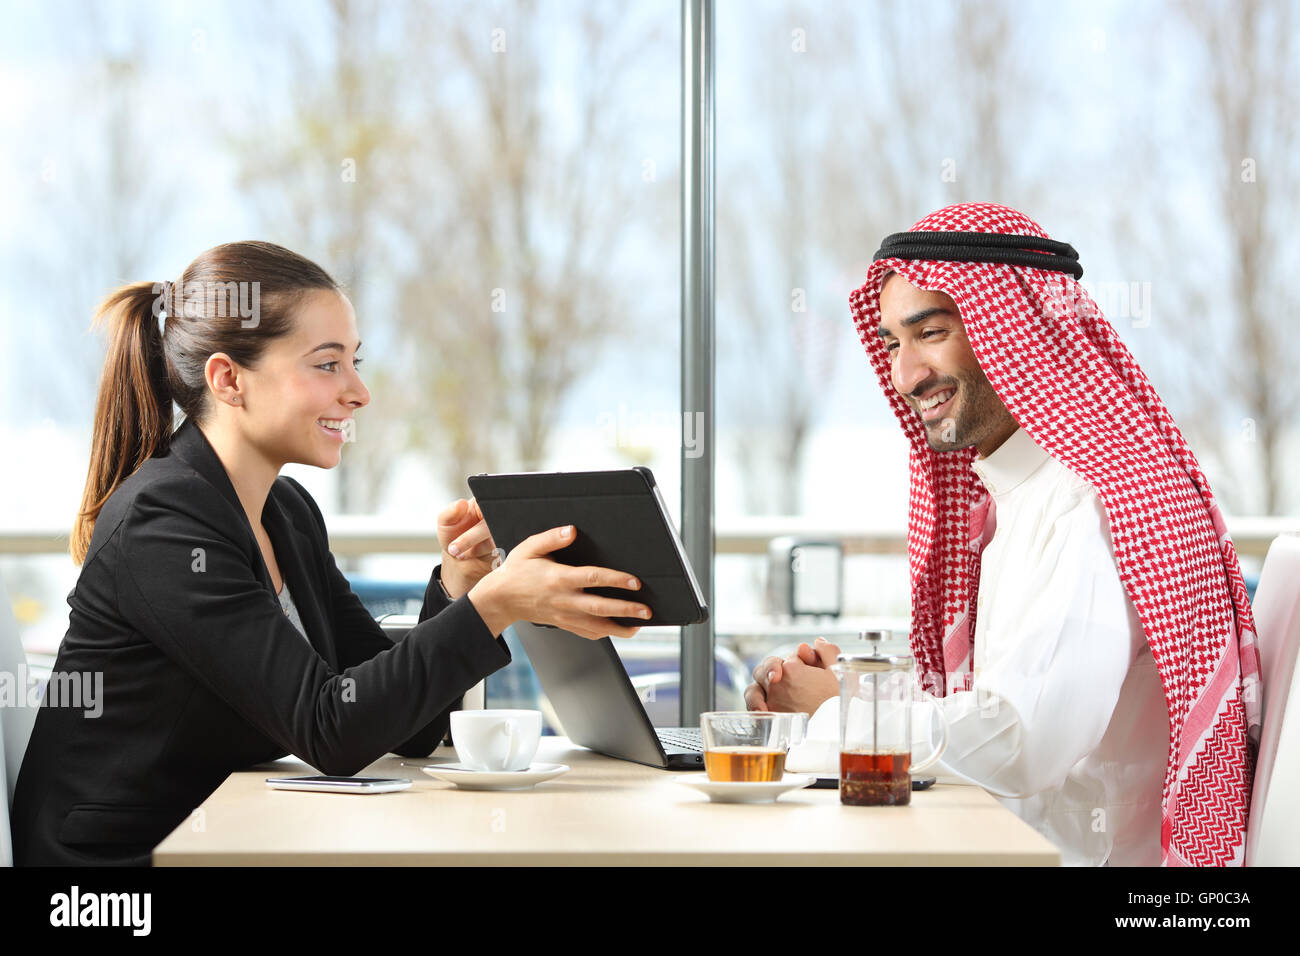 Geschäftsfrau oder Verkäuferin arbeitet mit einem arabischen Mann zeigt Produkte in einer Tablette in einem Coffee-shop Stockfoto